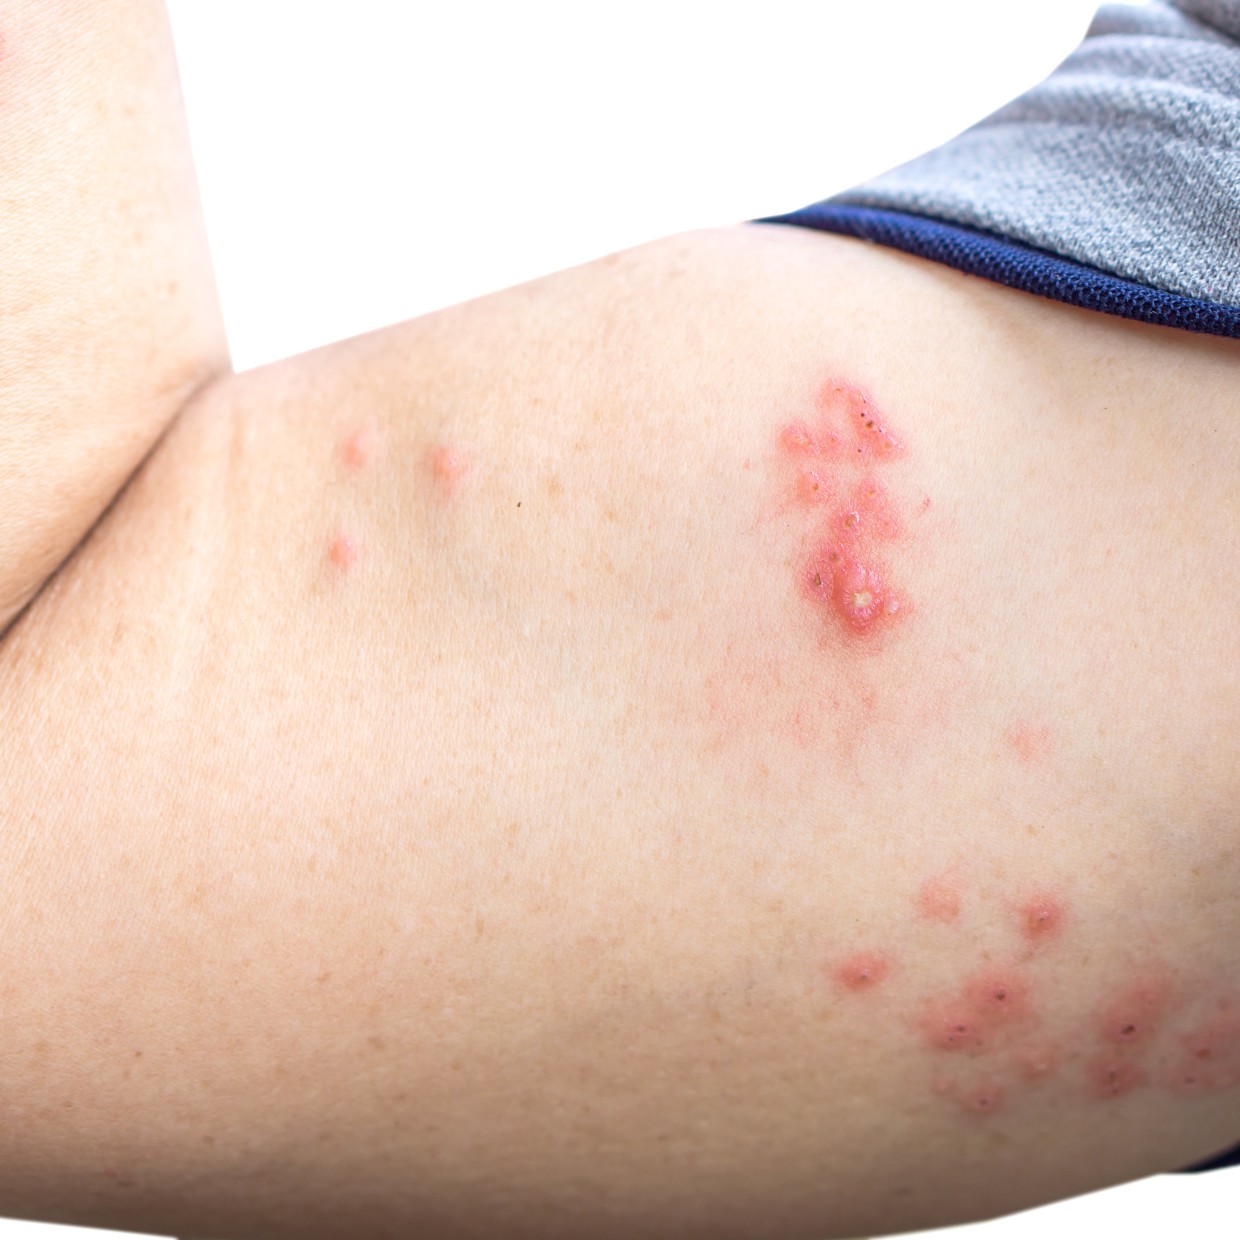  「帯状疱疹」は一度かかっても安心できない。知っておきたい初期症状や再発の可能性 